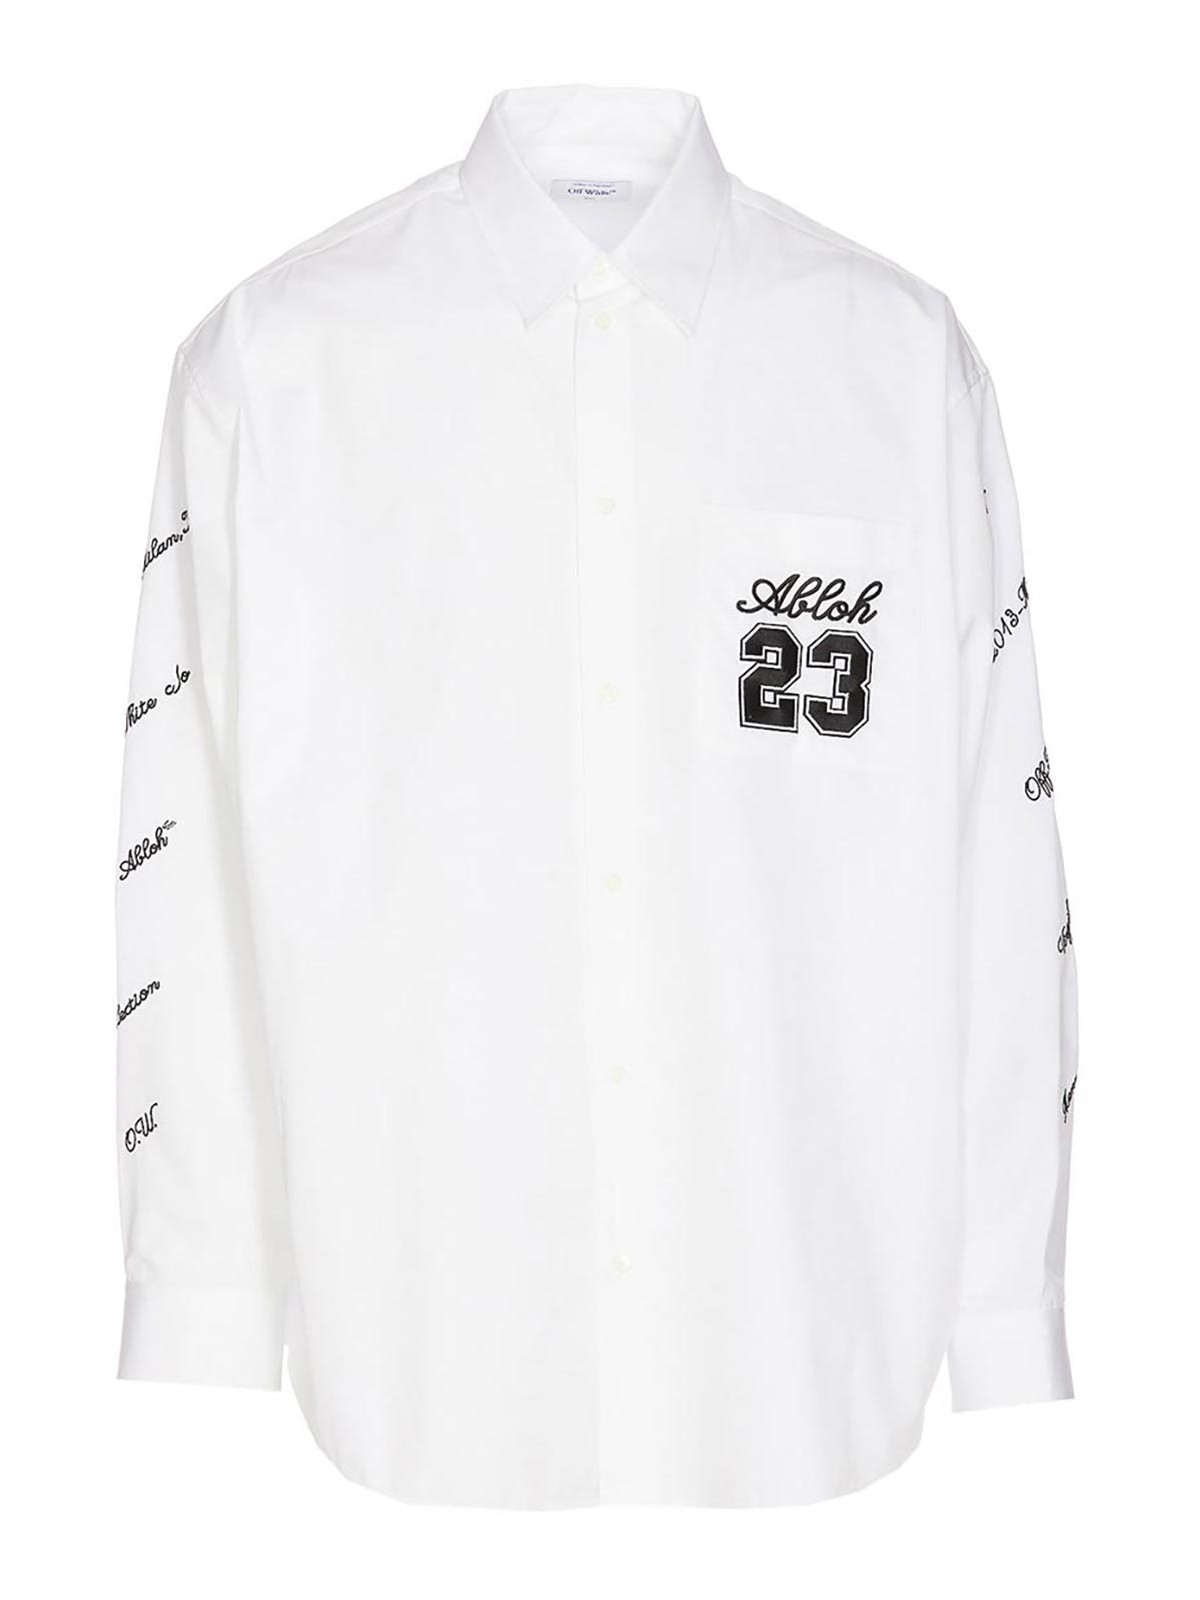 Shirts Off-White - 23 logo oversize shirt - OMGE004S24FAB0020110